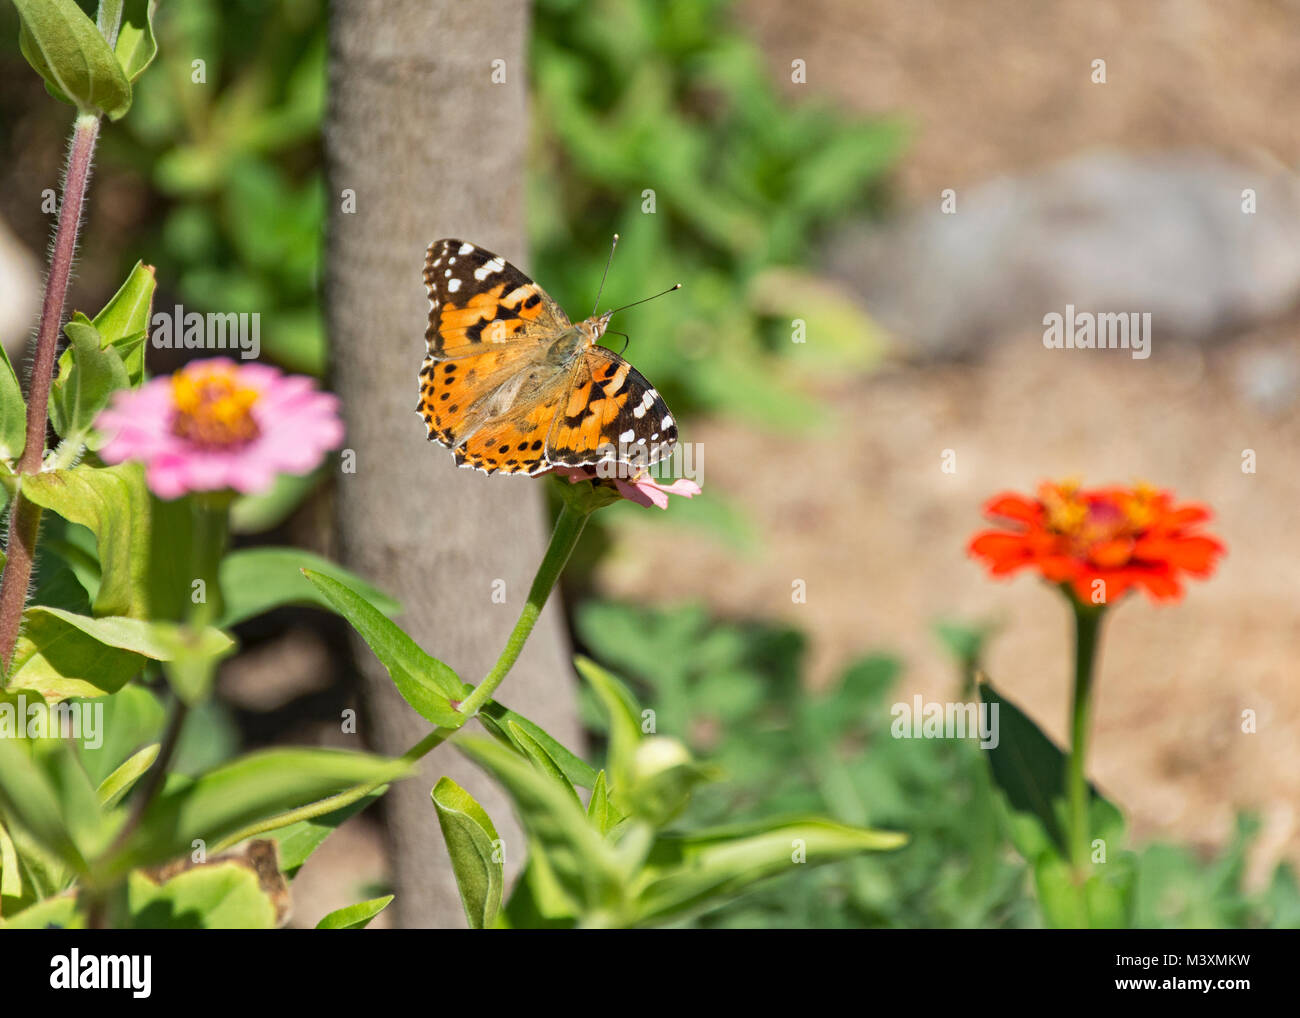 cierre de una mariposa pintada de naranja que se alimenta de un zinnia flor con un jardín borroso en el fondo Foto de stock